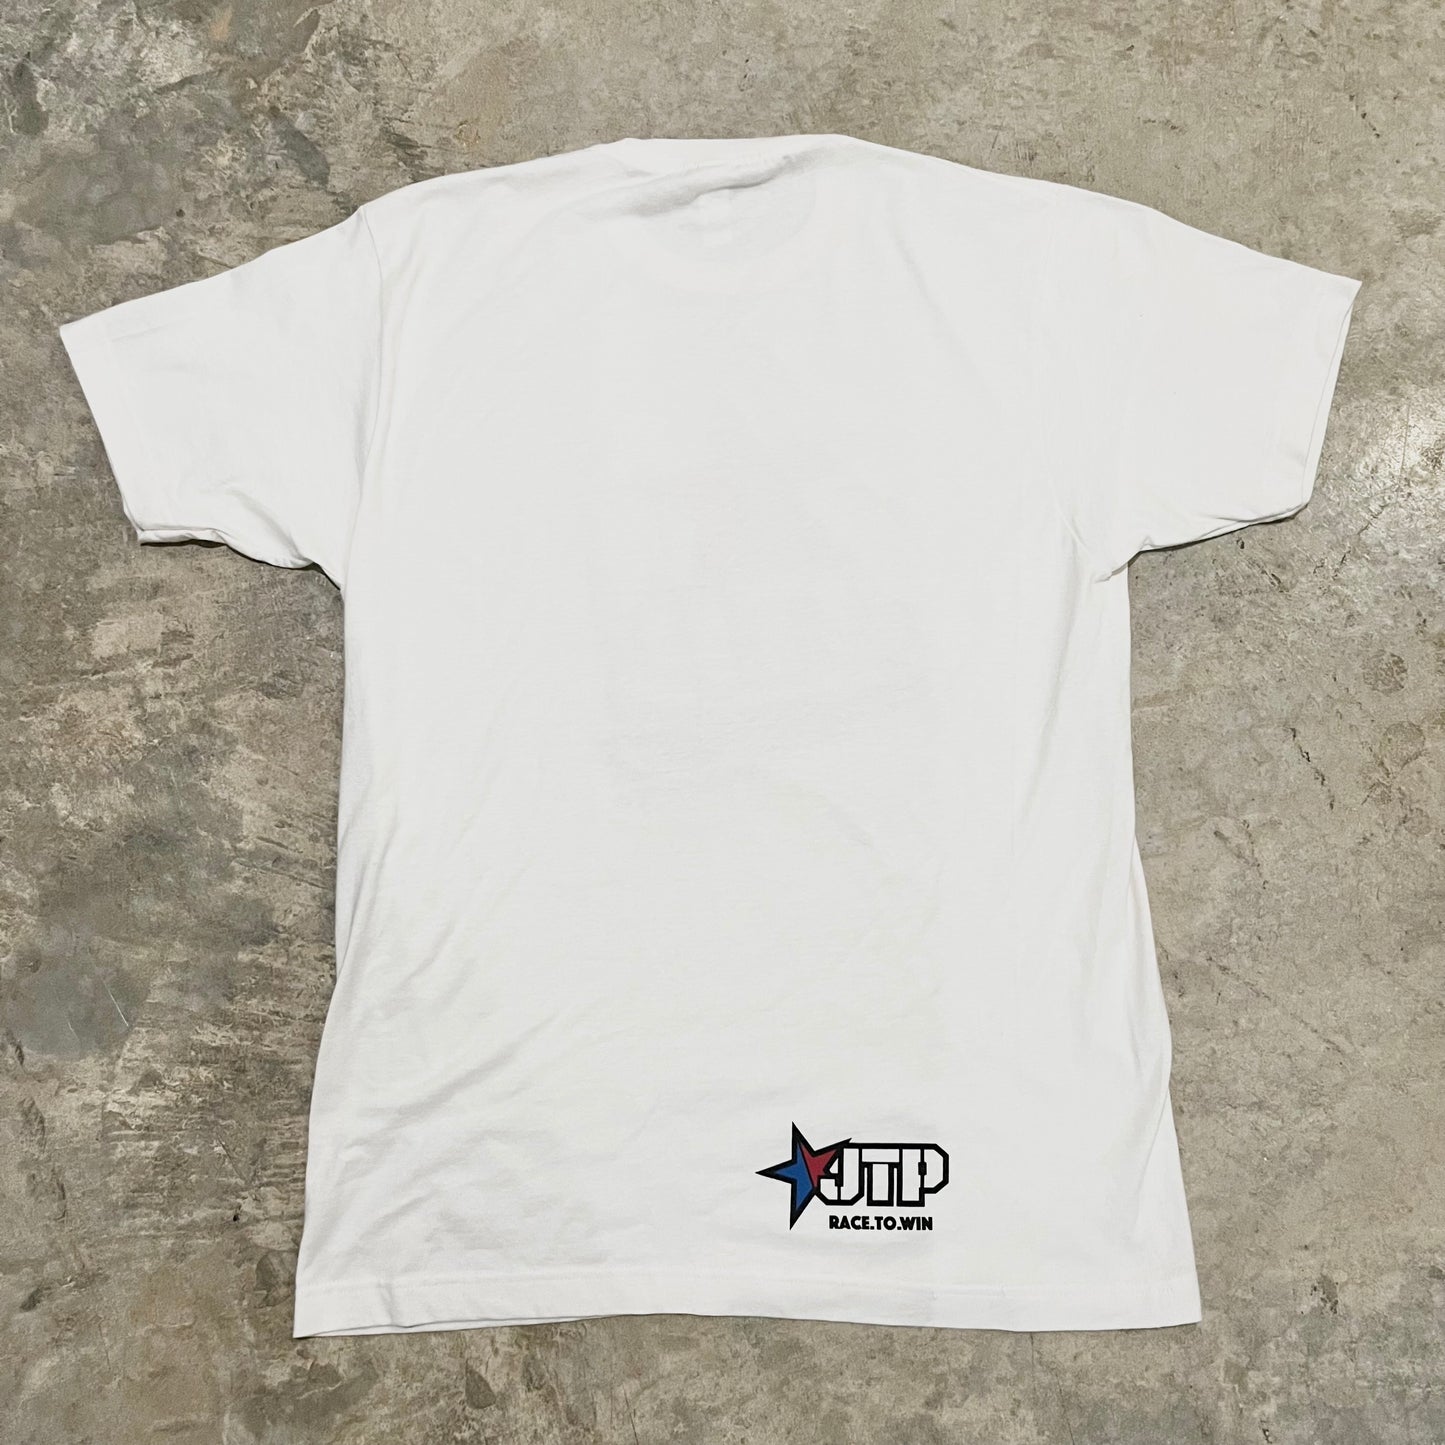 JTP Original T-Shirt